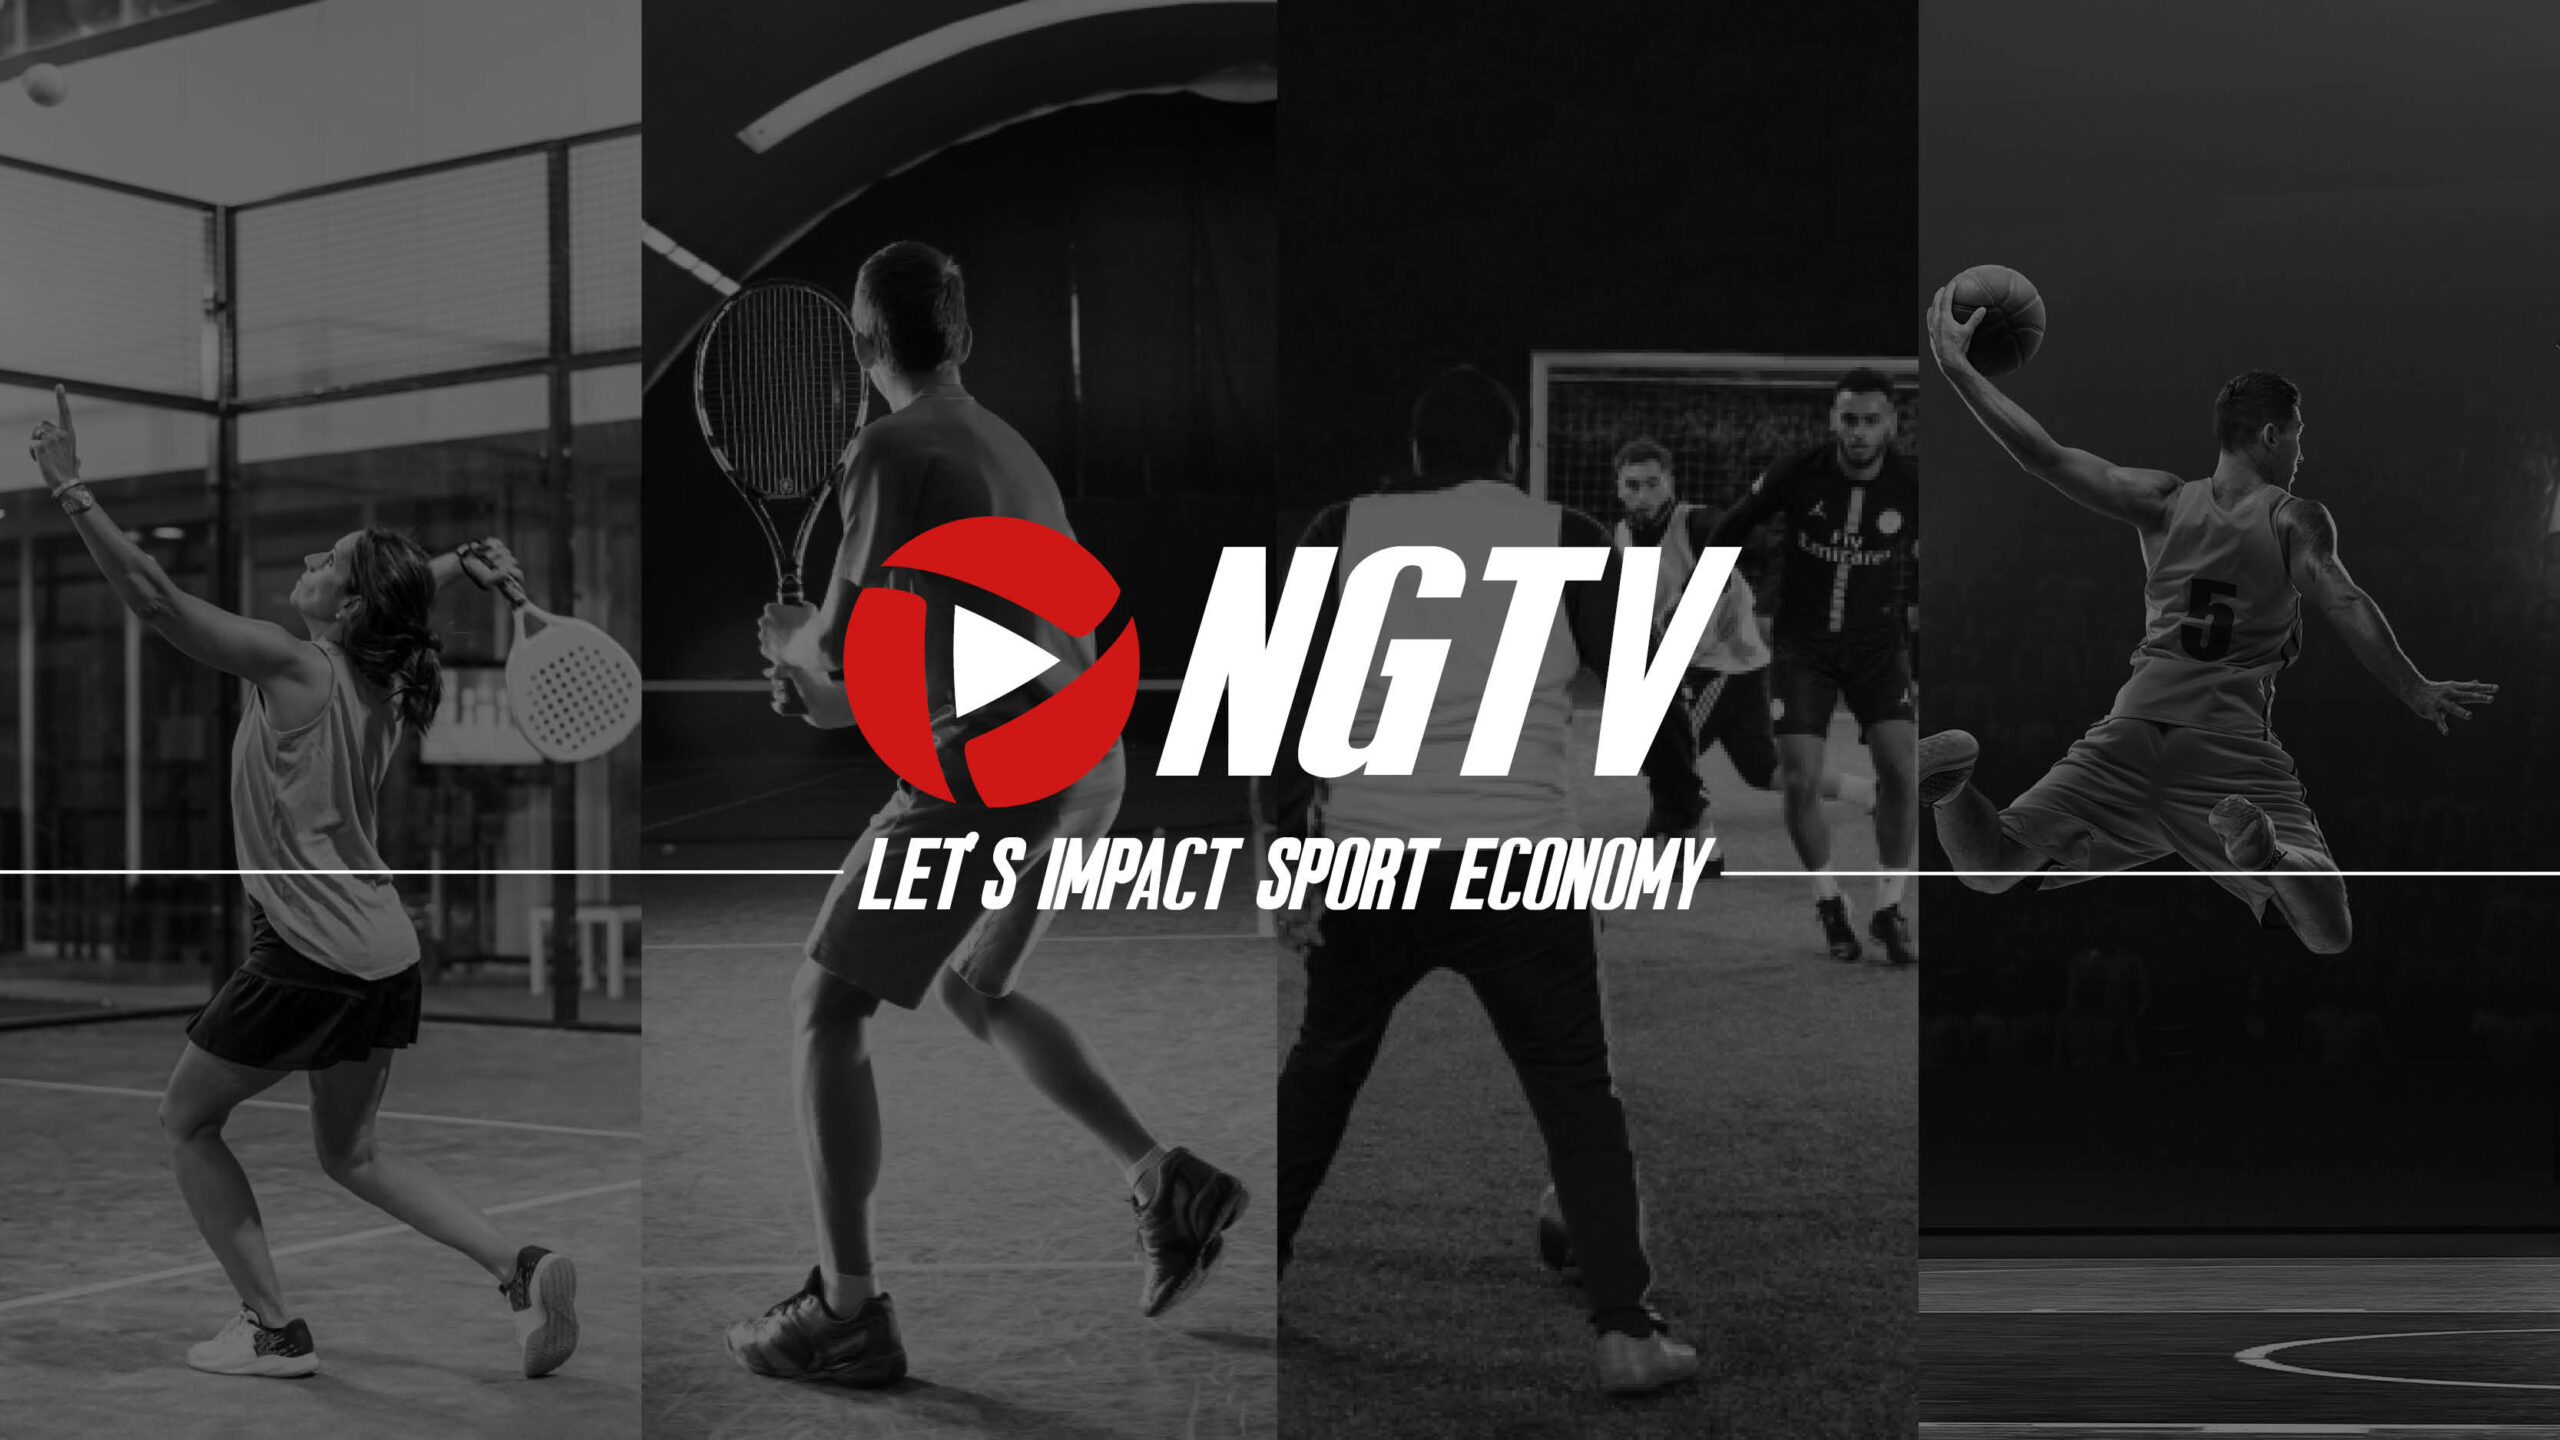 Das Ziel von NGTV: Einfluss auf die Sportwirtschaft nehmen!